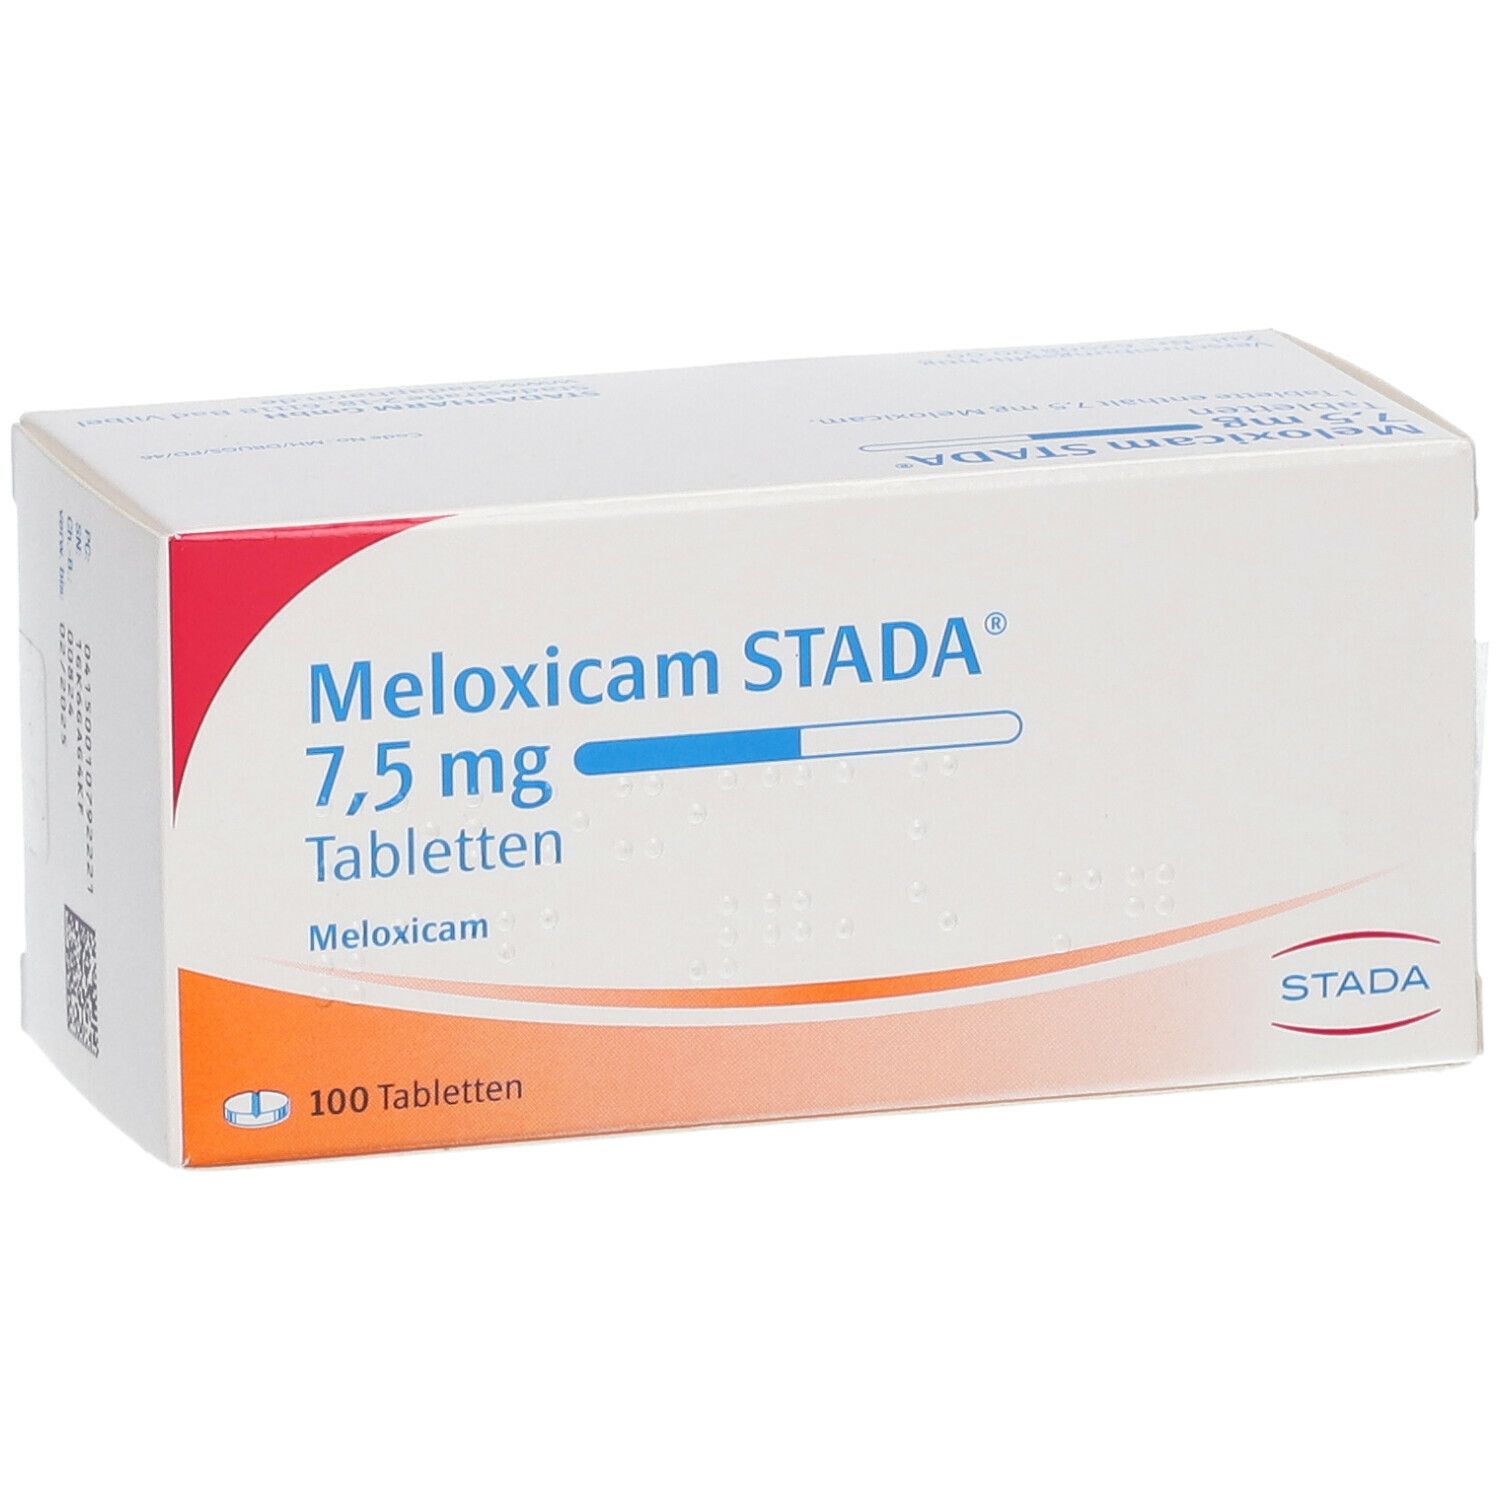 Meloxicam STADA® 7,5 mg